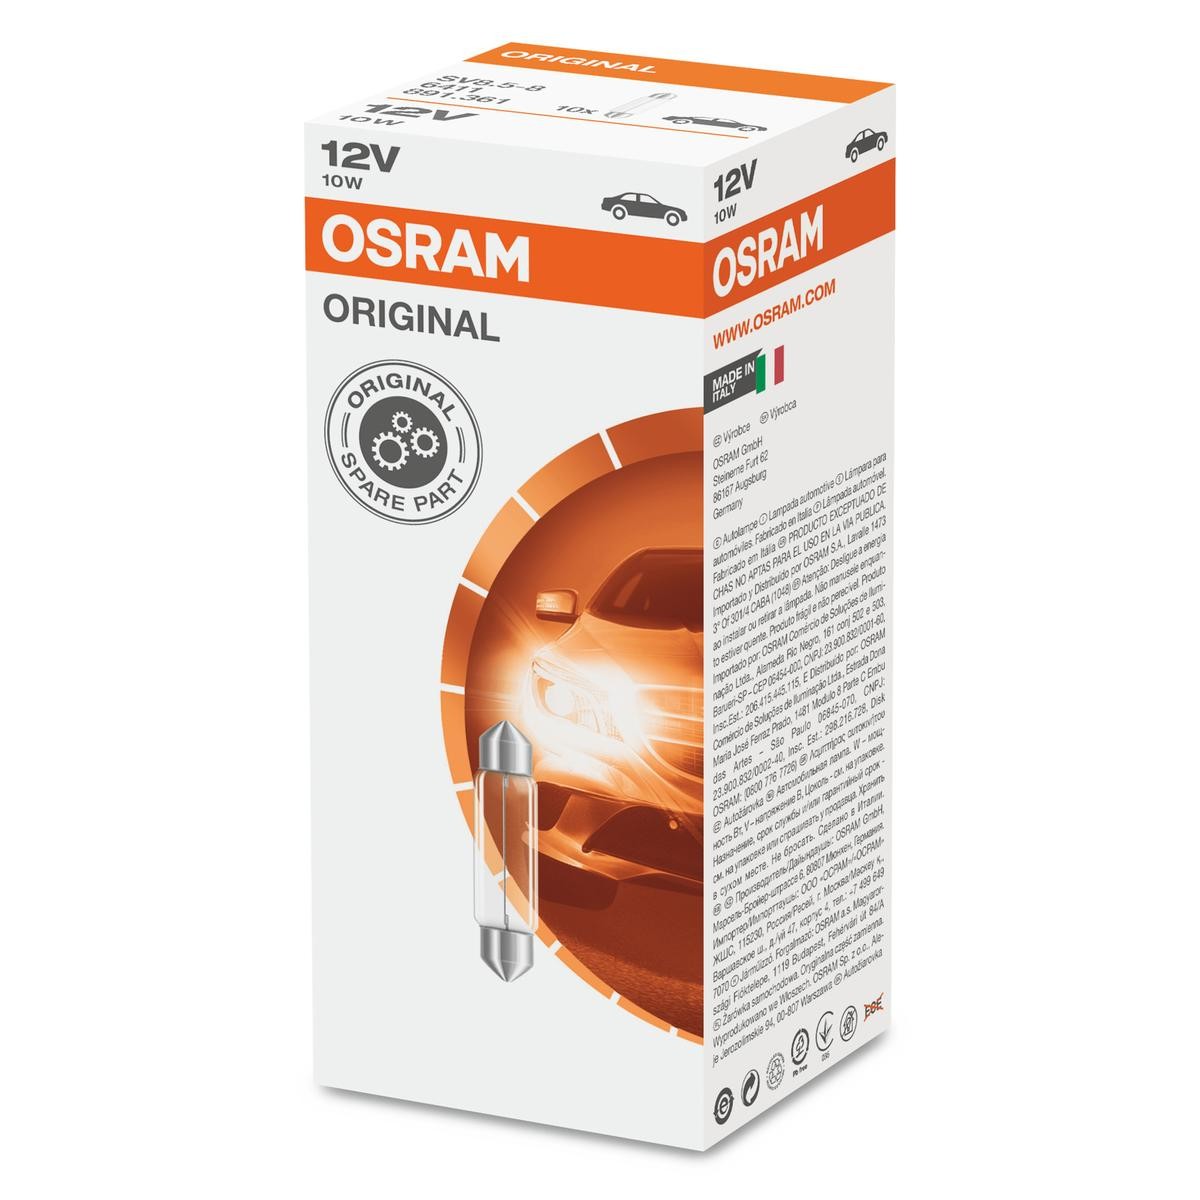 Ricambi FORD PUMA 2019: OSRAM 6411